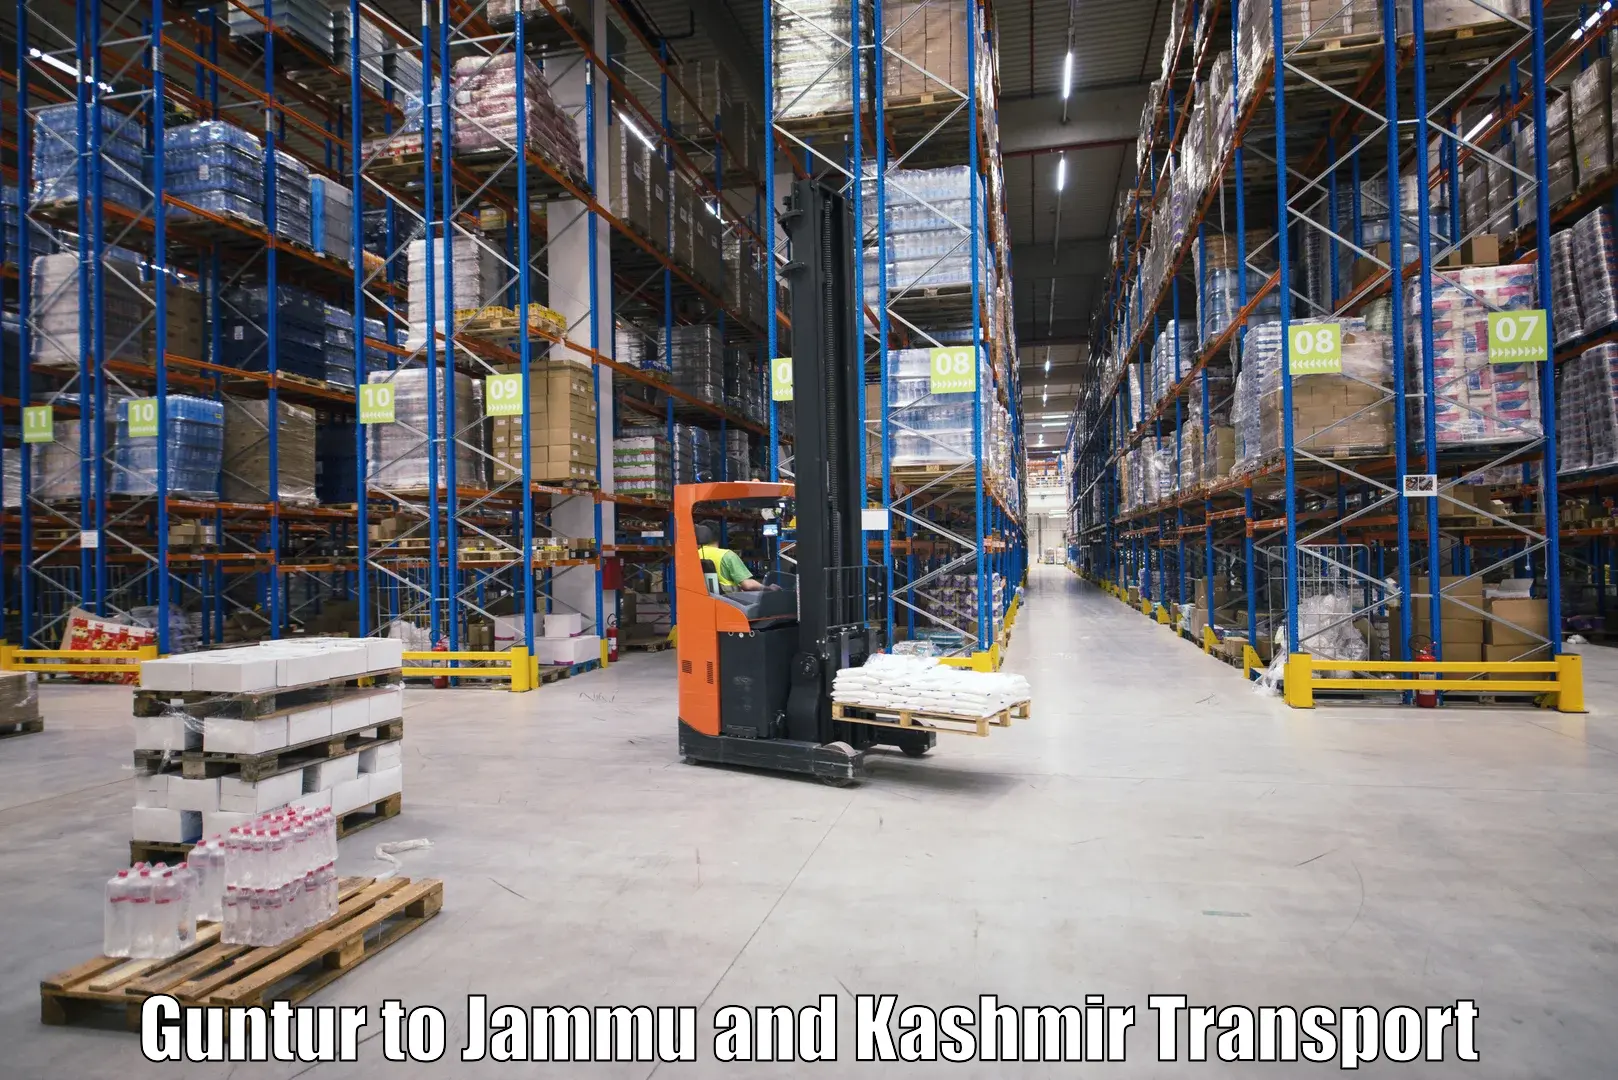 Luggage transport services Guntur to Ramban